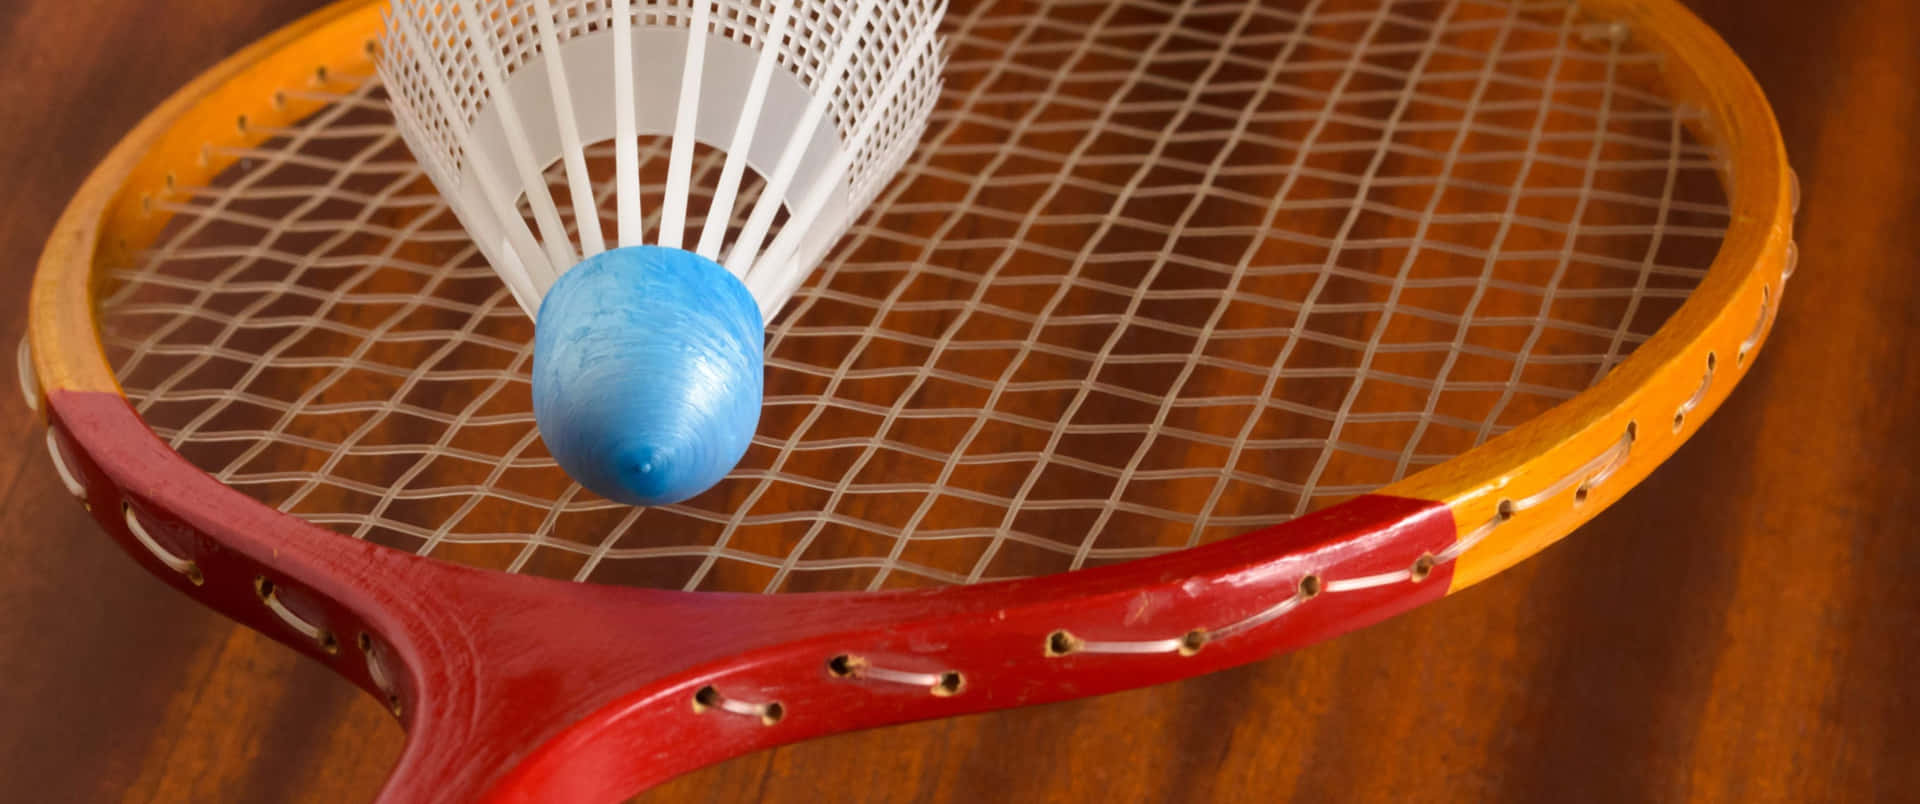 Klar,färdig, Volley! En Närbild På En Badmintonmatch På En Bakgrund Med Upplösningen 3440x1440p.